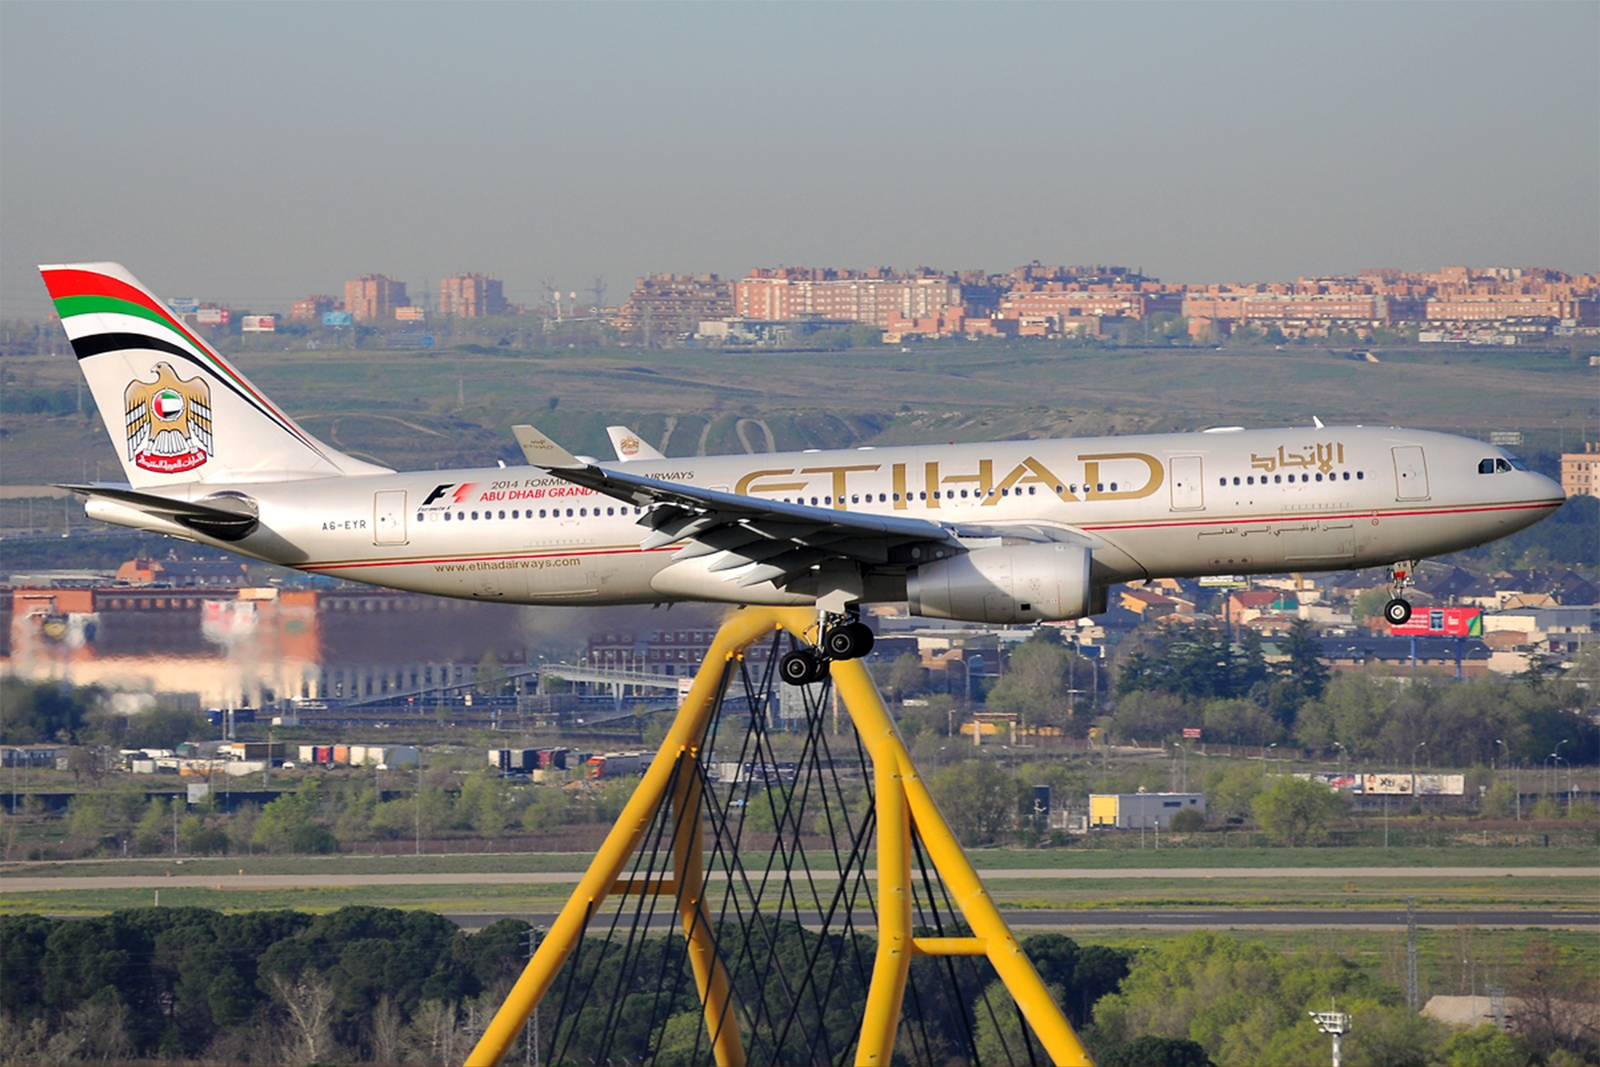 El A6-EYR cuando volaba para Etihad Airways. Foto: Alberto González.